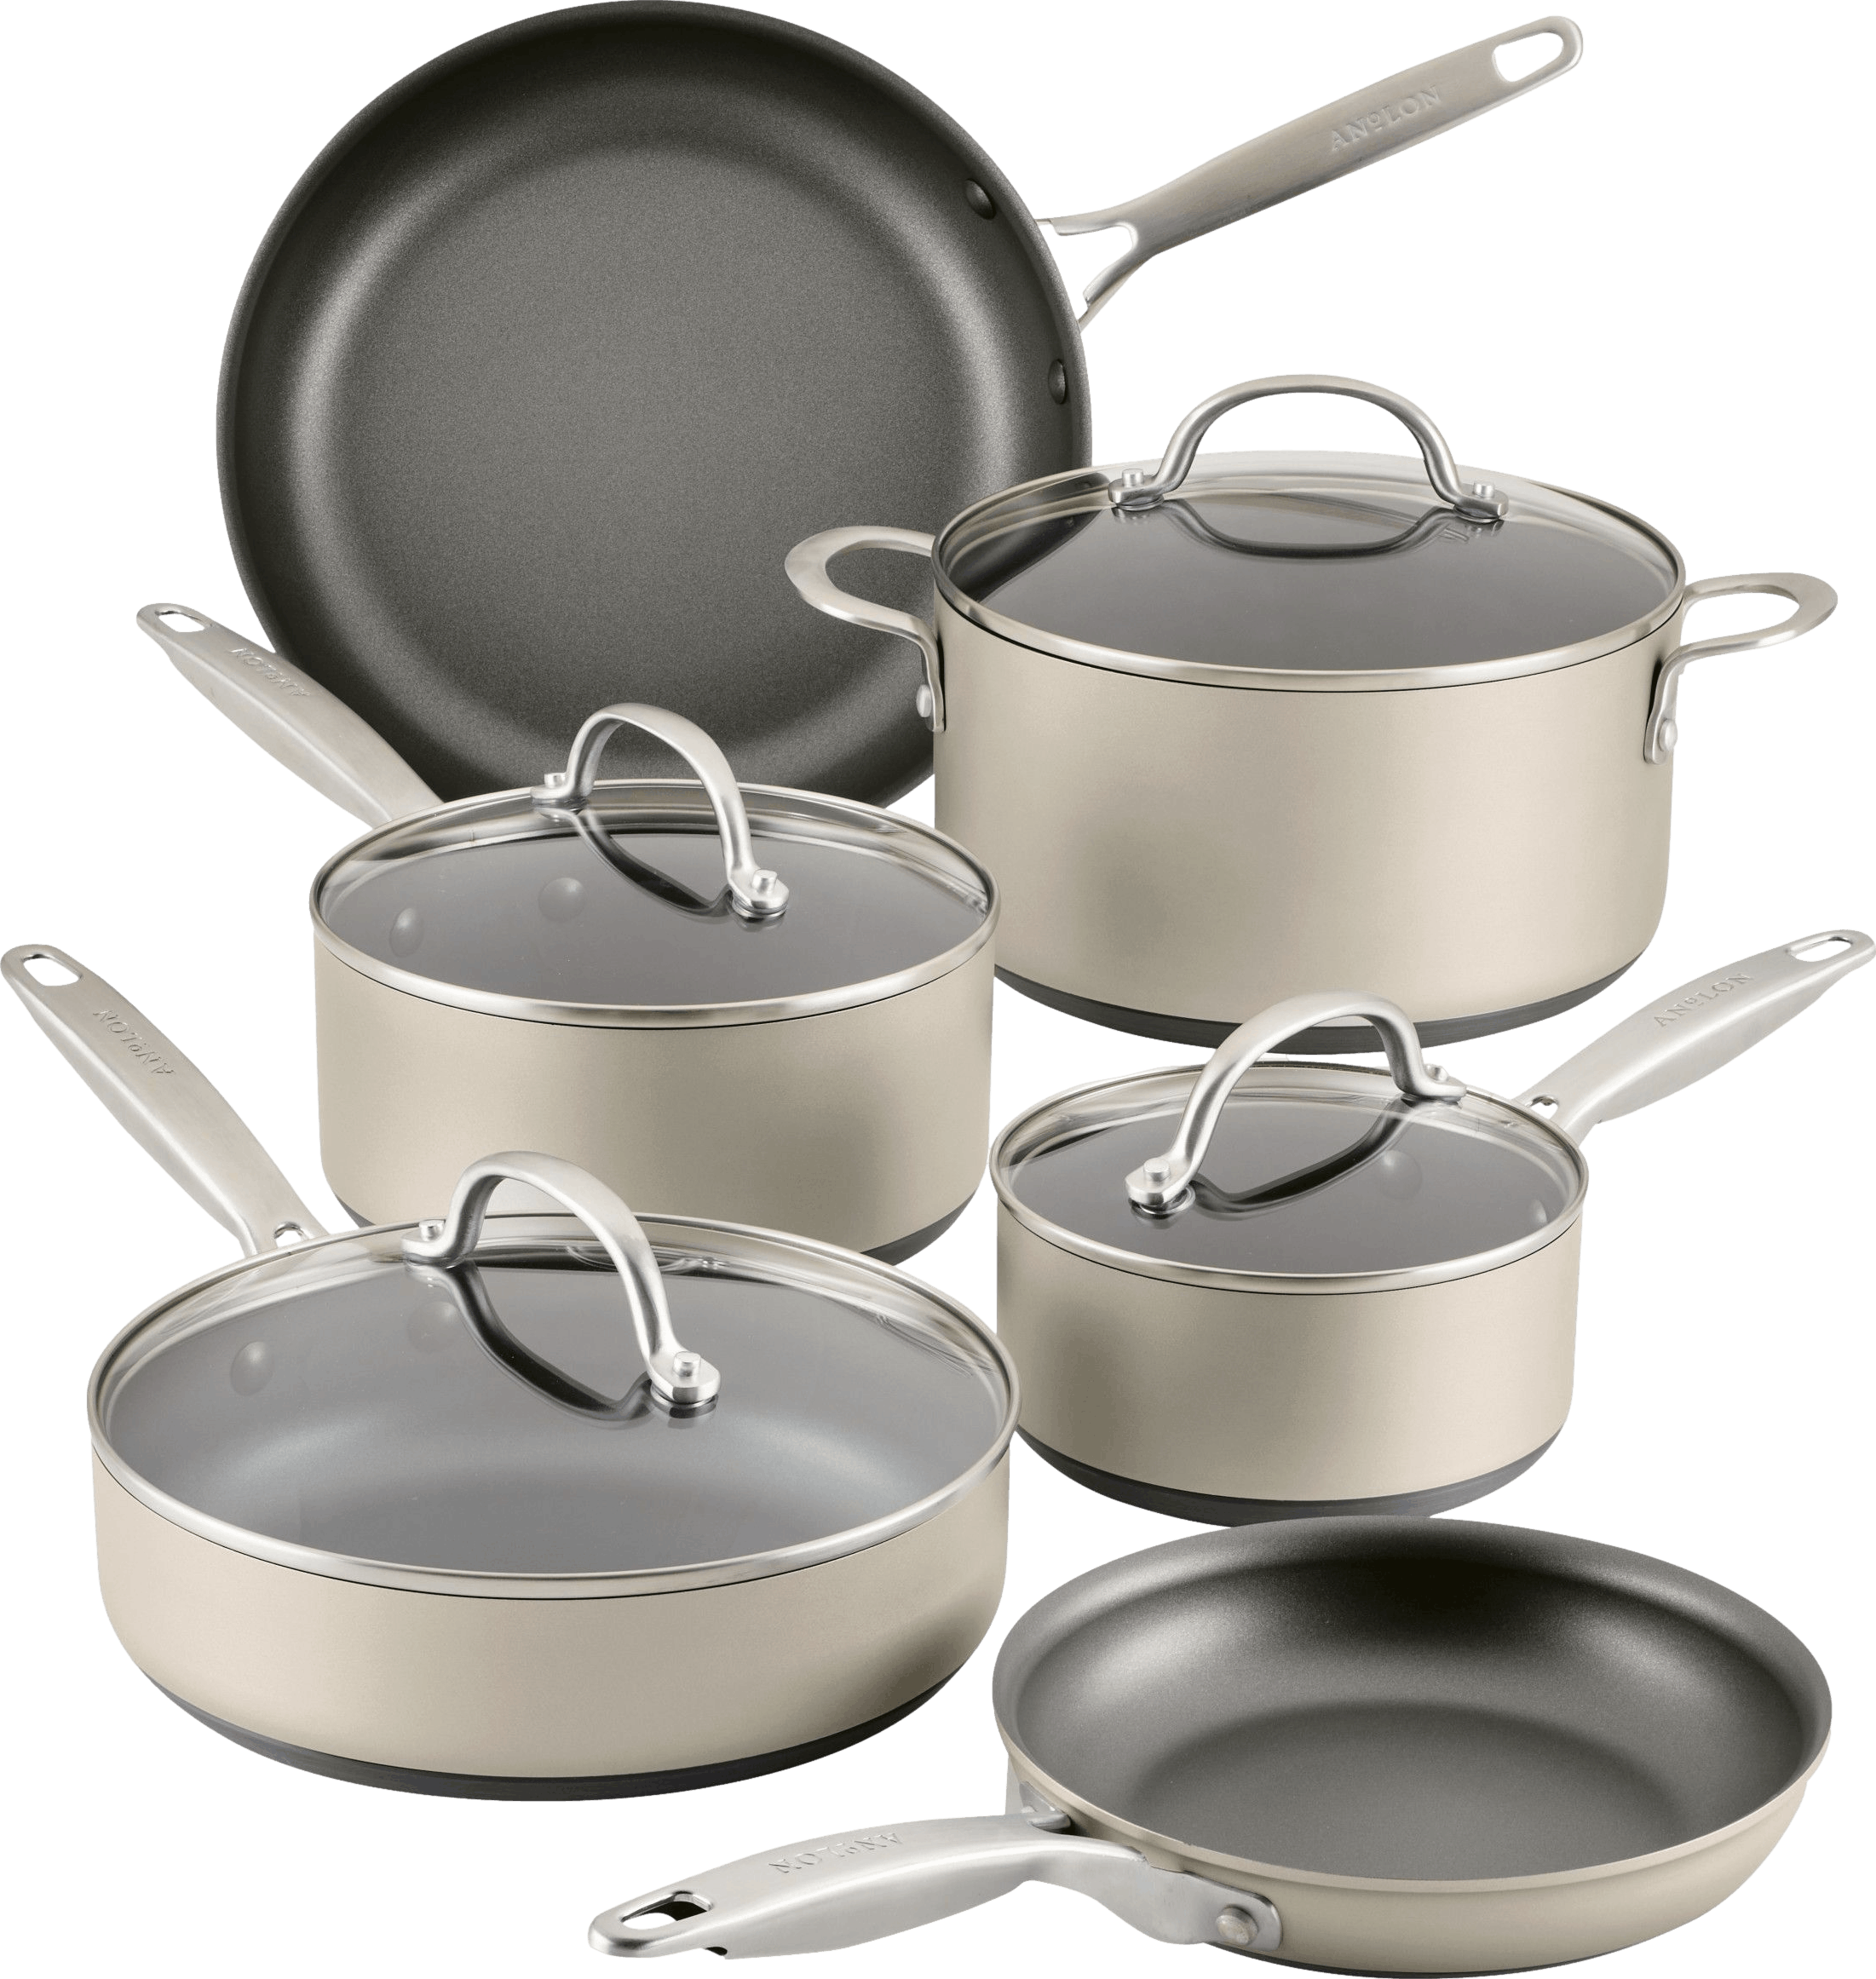 OXO 5pc Ceramic Pro Non-Stick Cookware Set Gray